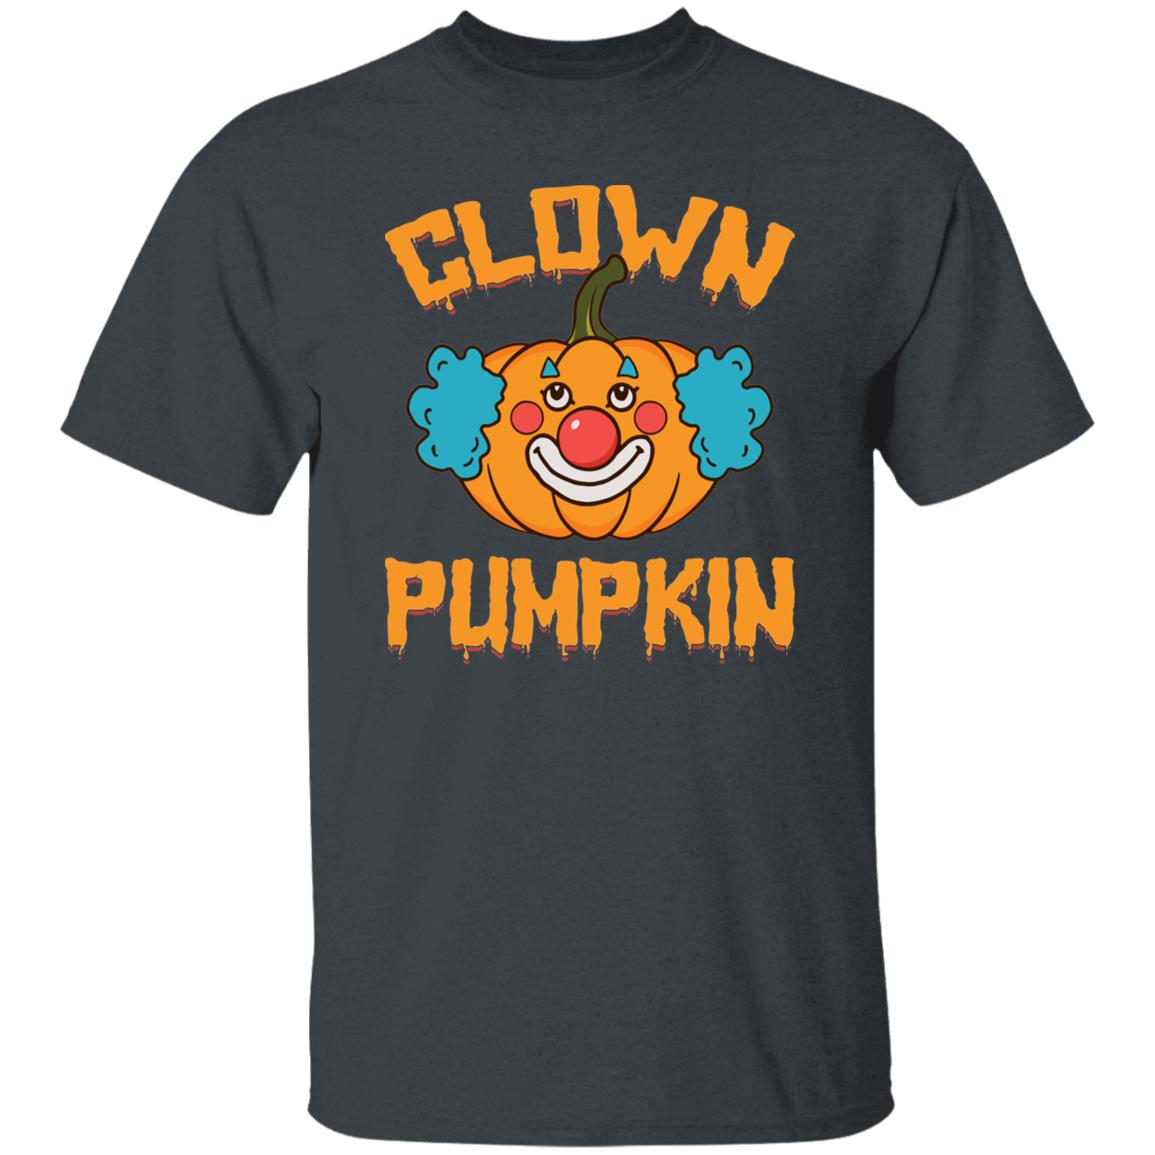 Clown Pumpkin Funny Halloween Shirt